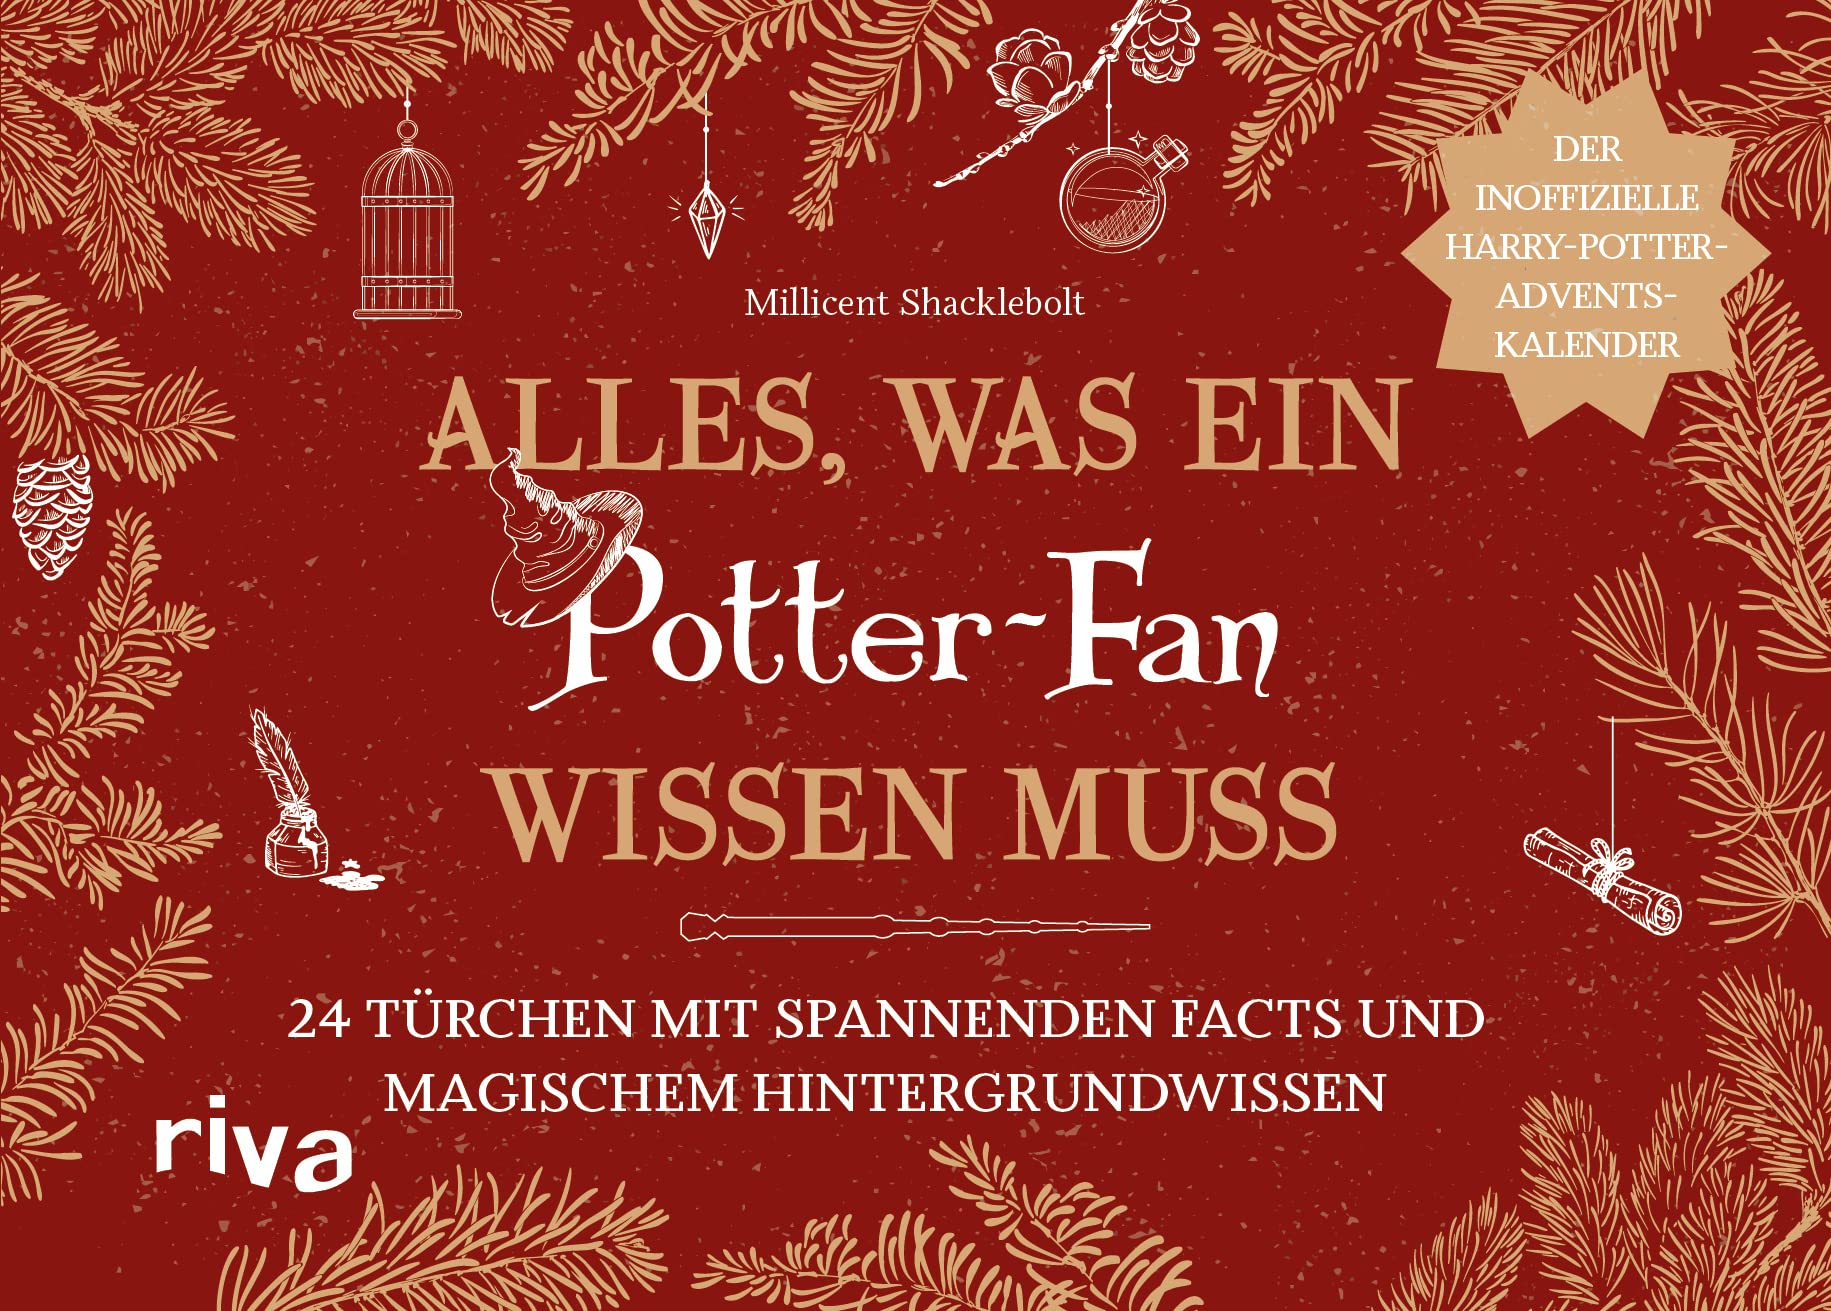 Alles, was ein Potter-Fan wissen muss: 24 Türchen mit spannenden Facts und magischem Hintergrundwissen - Der inoffizielle Harry-Potter-Adventskalender. Unnützes Wissen für Fans